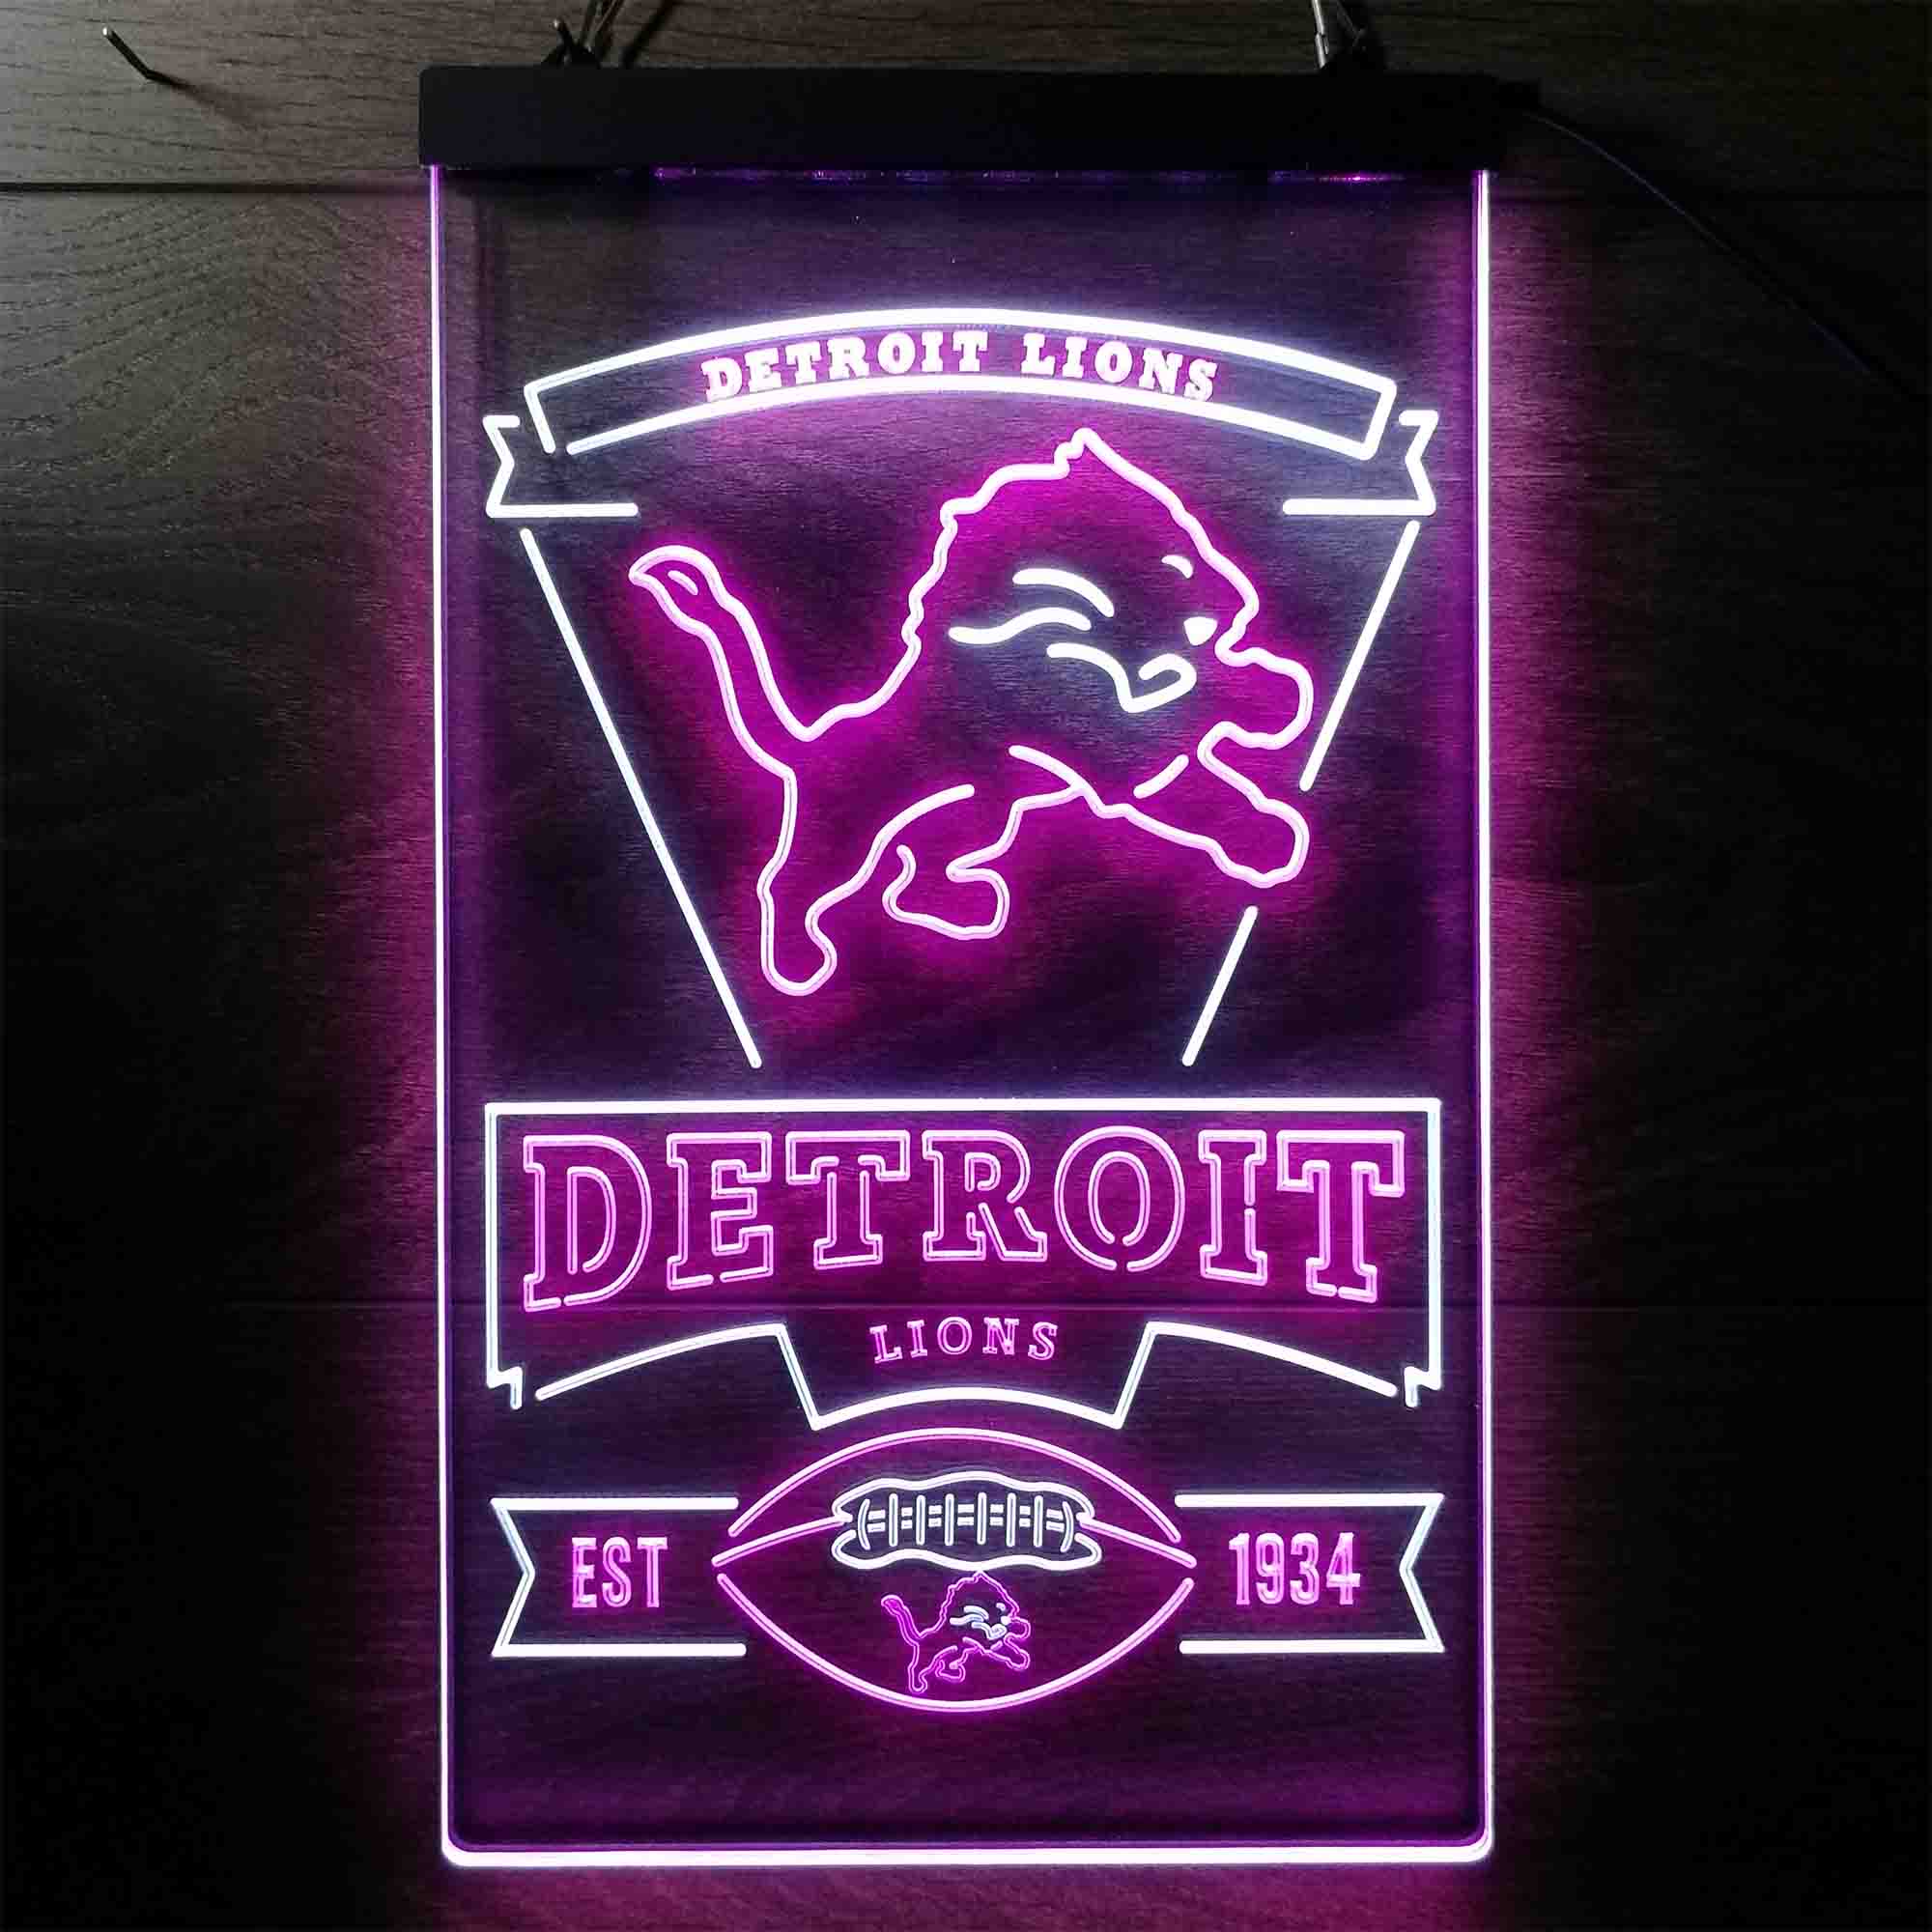 Detroit Lions EST 1934 Neon LED Sign